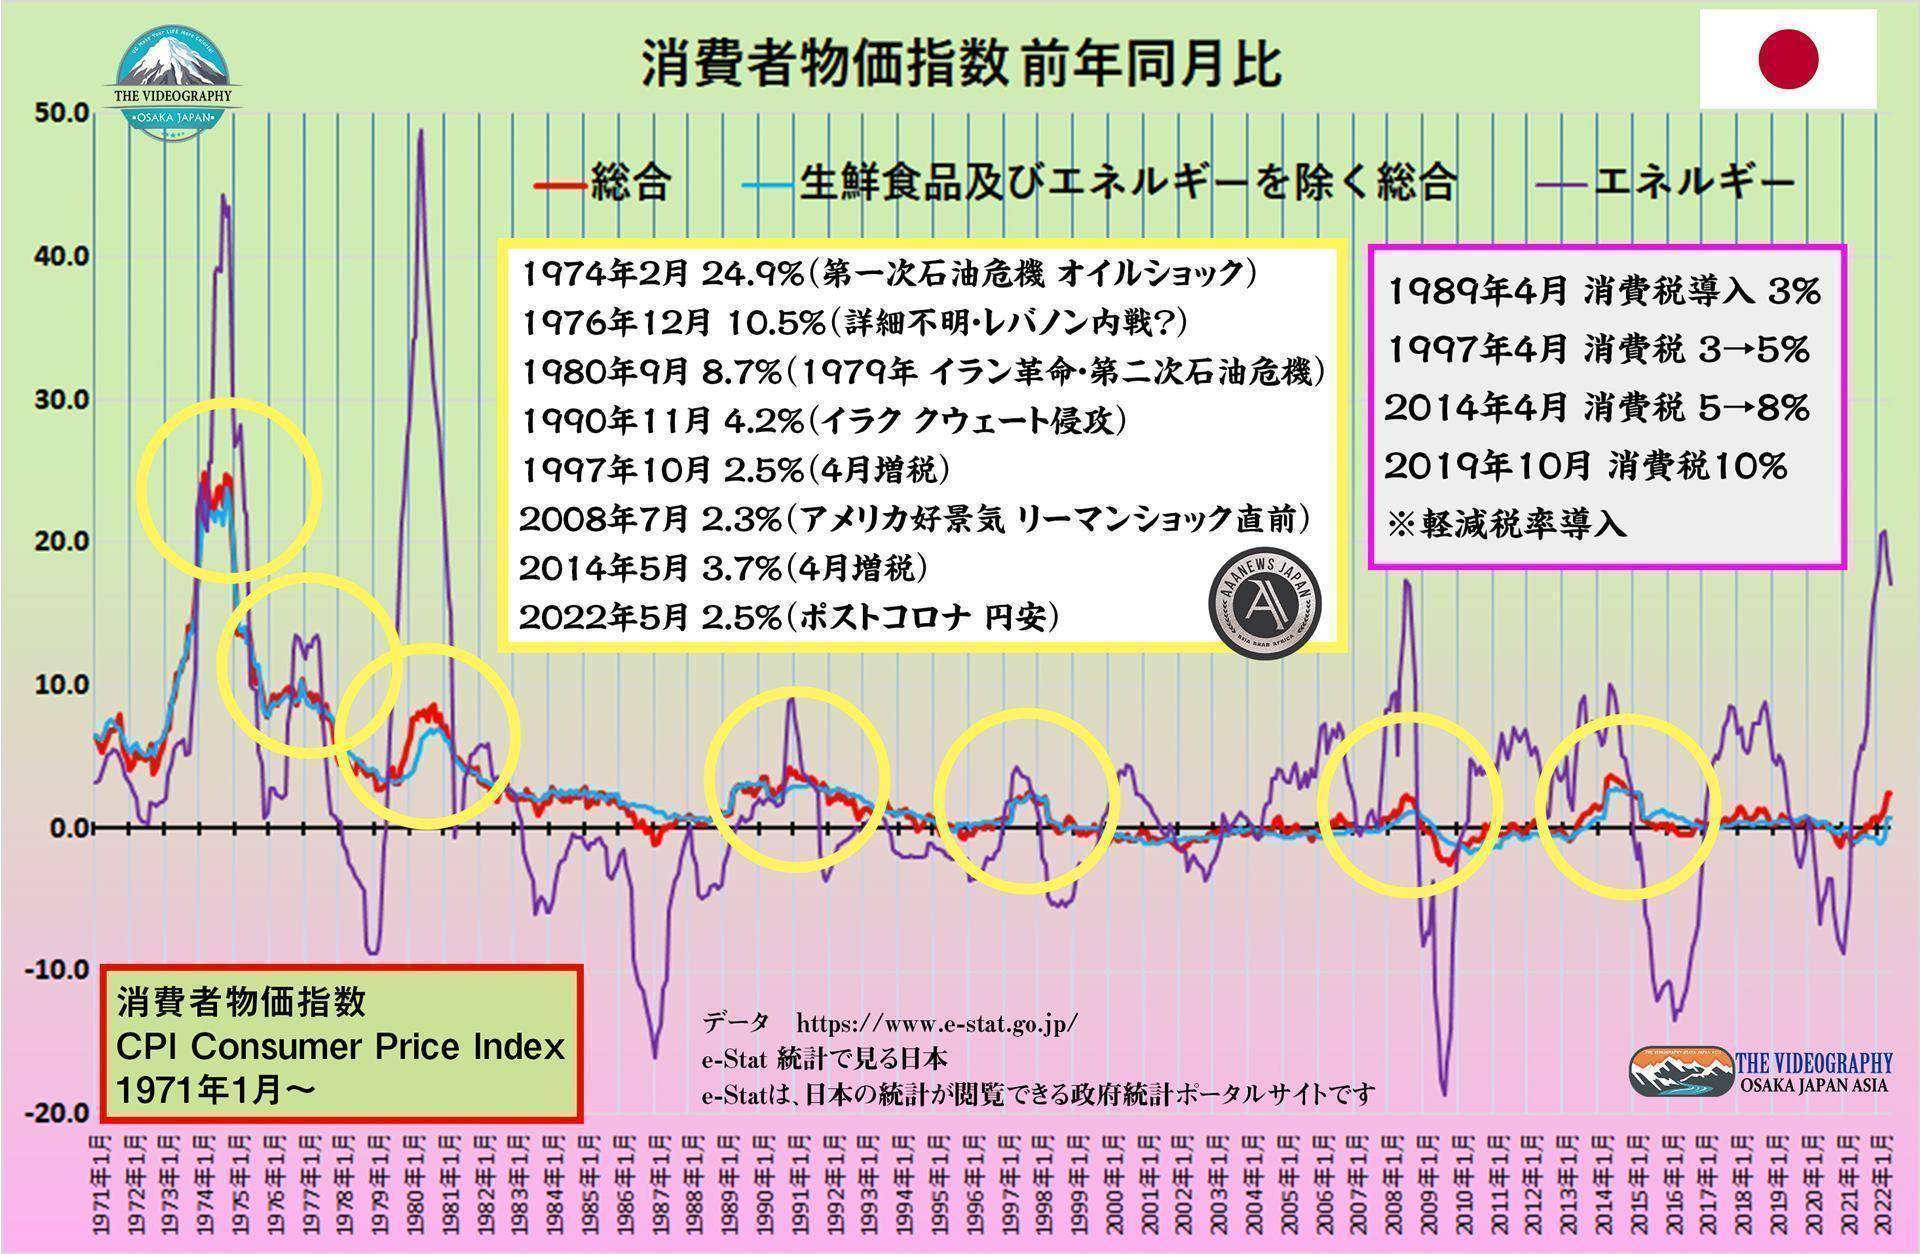 日本の消費者物価指数 CPI / Consumer price index 1971年以降。 ★消費者物価指数 前年同月比★ 消費者物価指数 総合指数 最高値の数値 1974年2月 24.9% 1980年9月 8.7% 1990年11月 4.2% 1997年10月 2.5% 2008年7月 2.3% 2014年5月 3.7% 2022年5月 2.5%